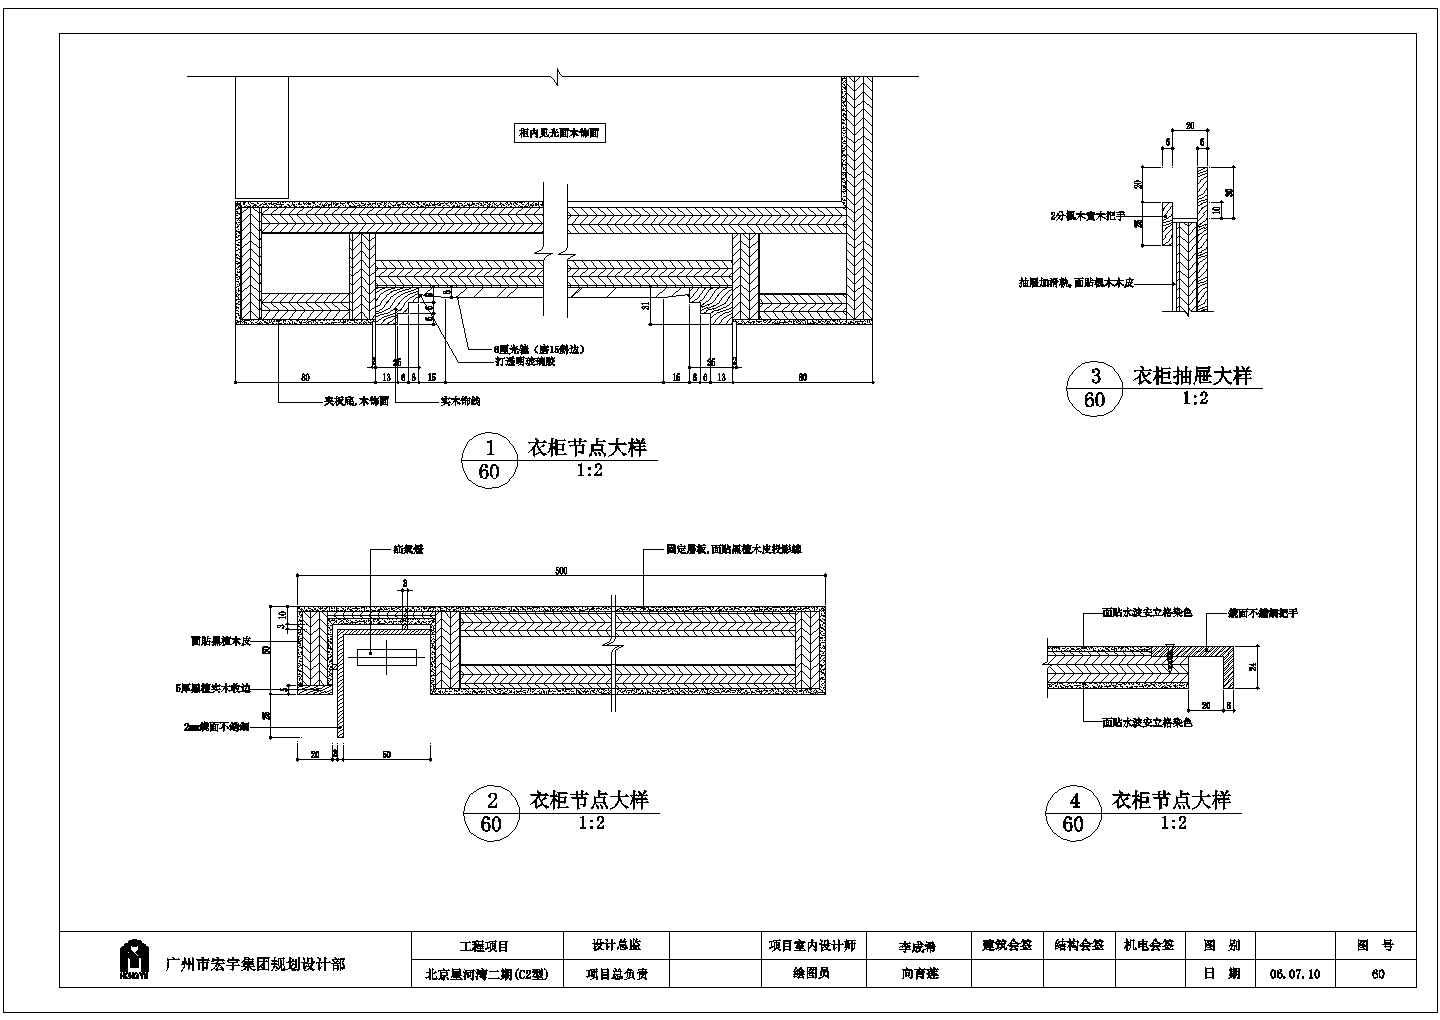 北京星河湾二期(C2型)衣柜详细建筑施工图